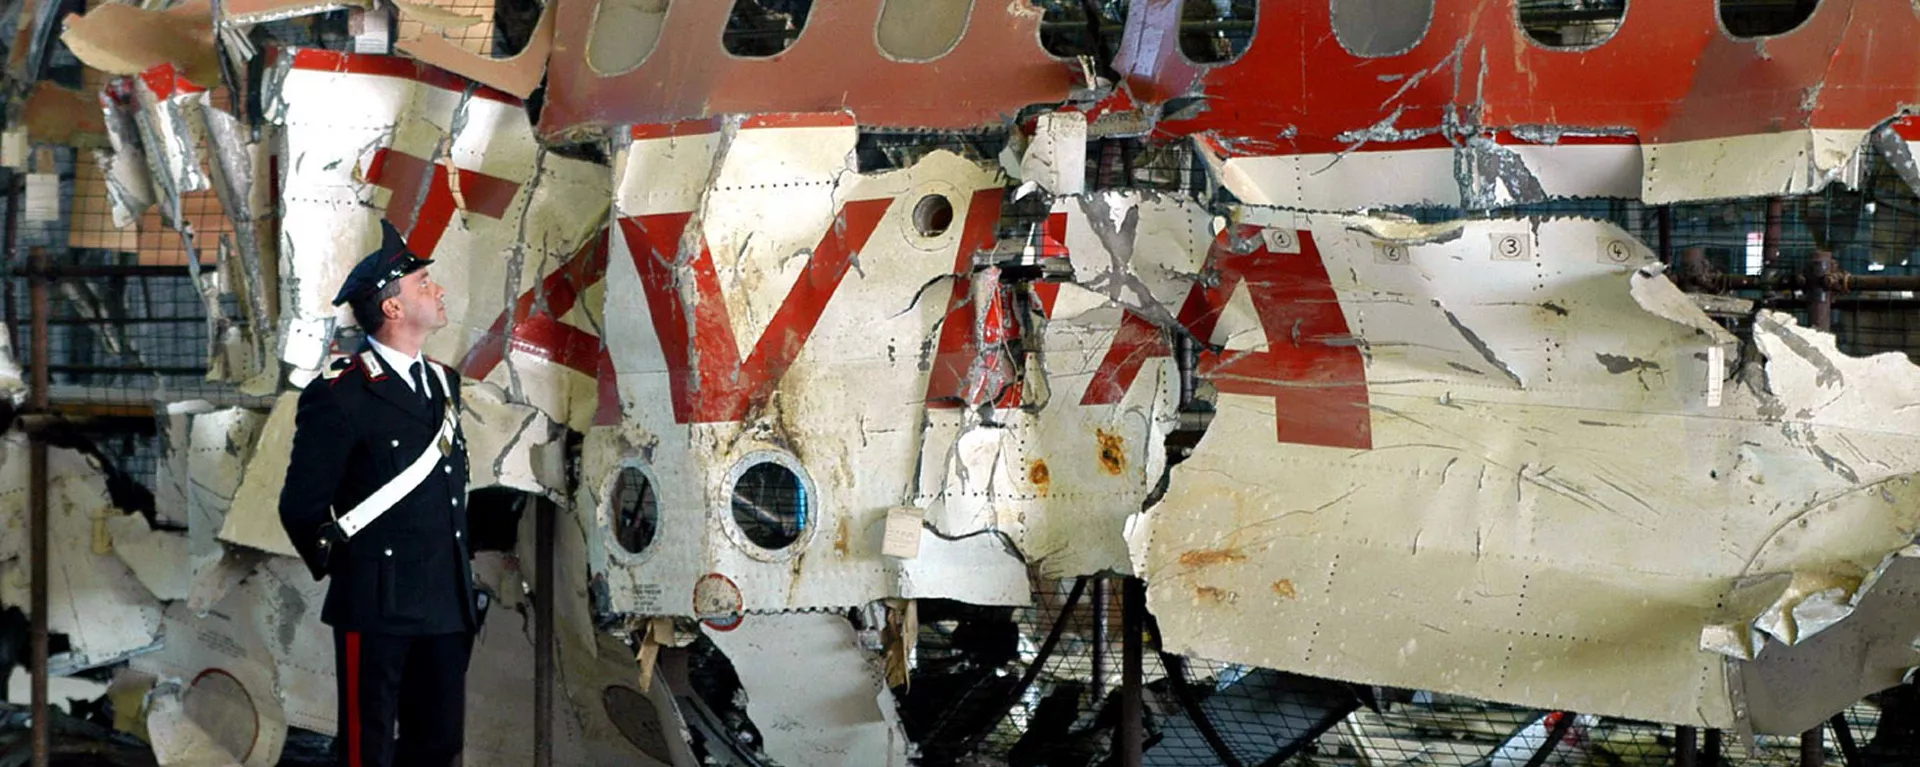 Los restos del avión DC-9-15 de Aerolinee Itavia, derribado en junio de 1980 - Sputnik Mundo, 1920, 11.01.2020